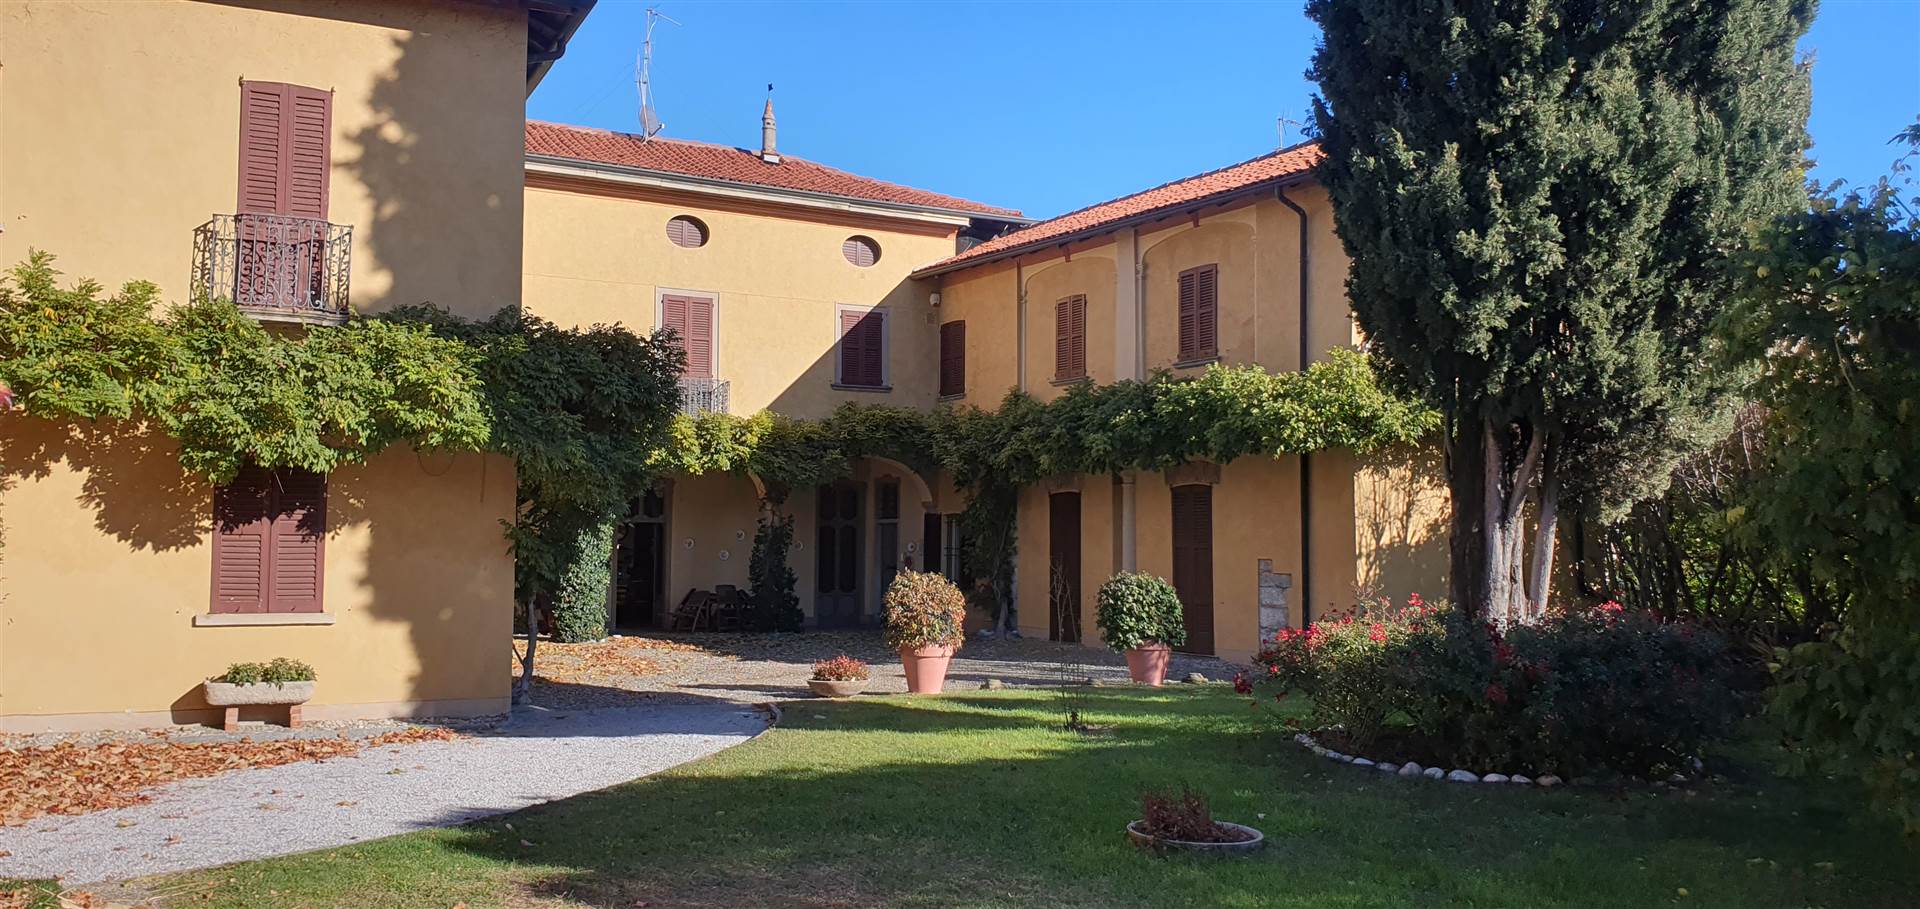 Palazzo / Stabile in vendita a Garbagnate Monastero, 28 locali, zona gio, Trattative riservate | PortaleAgenzieImmobiliari.it